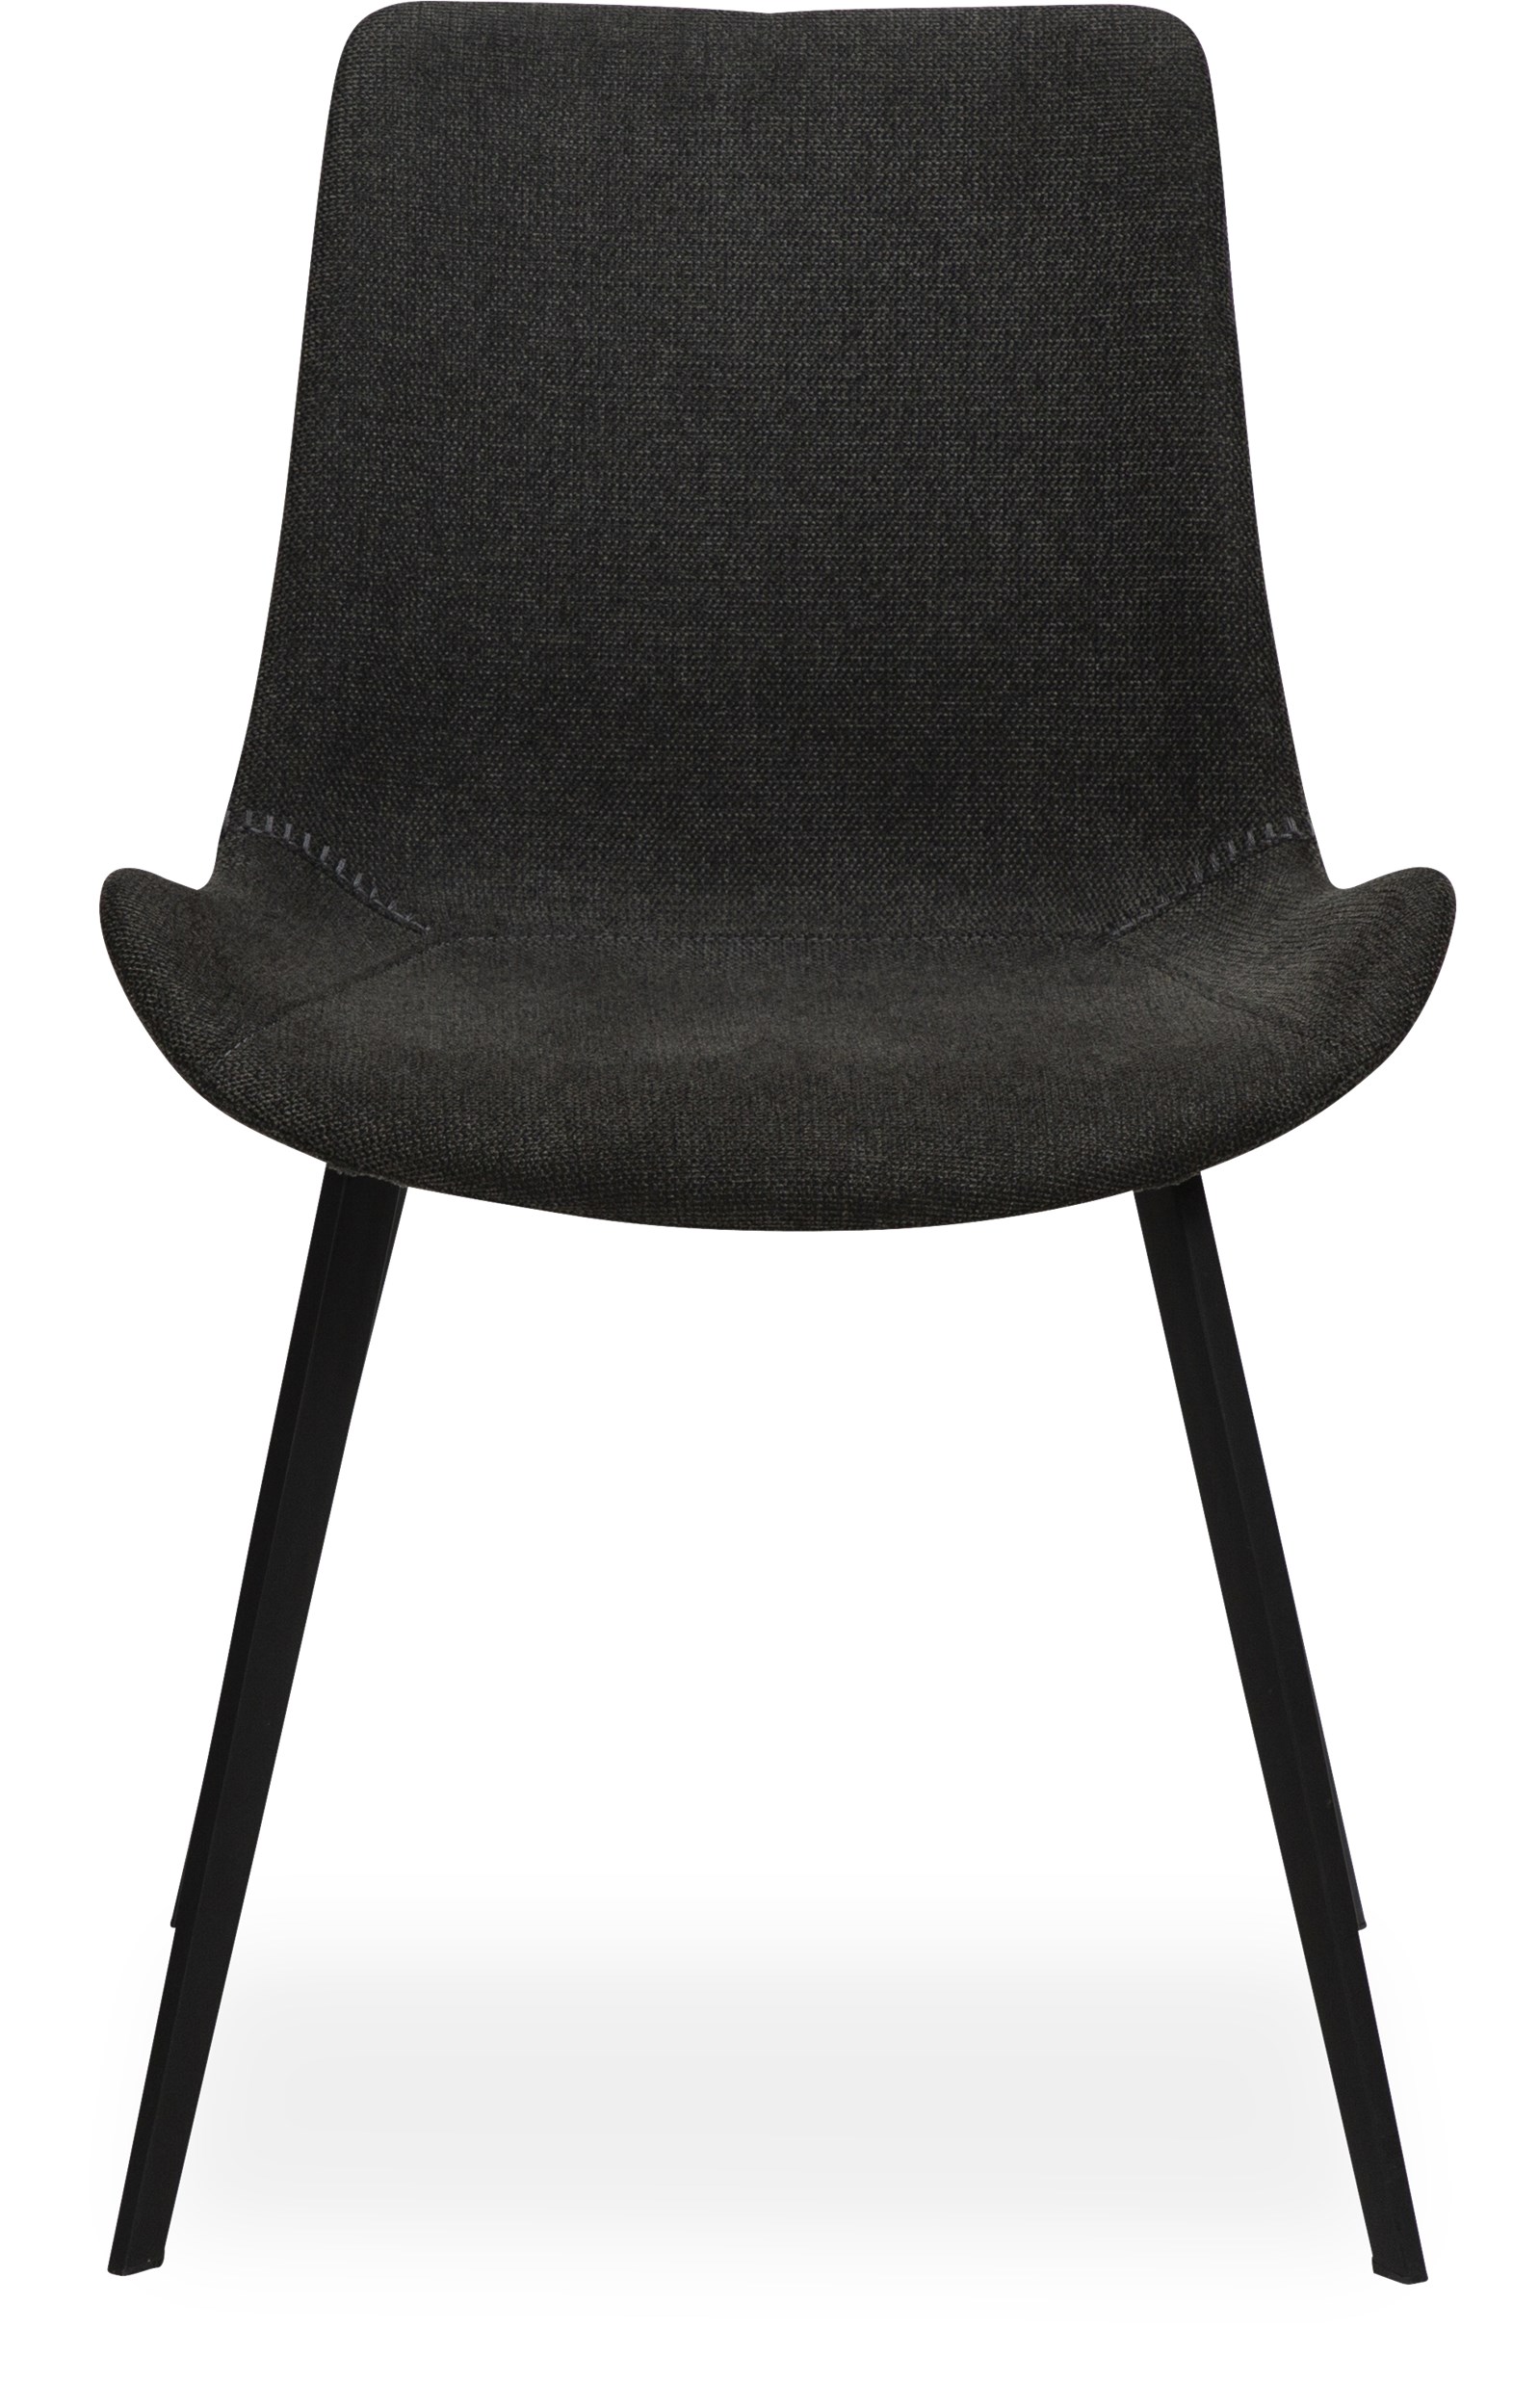 Hype Spisebordsstol - Sæde i crow black stof og ben i sortlakeret metal